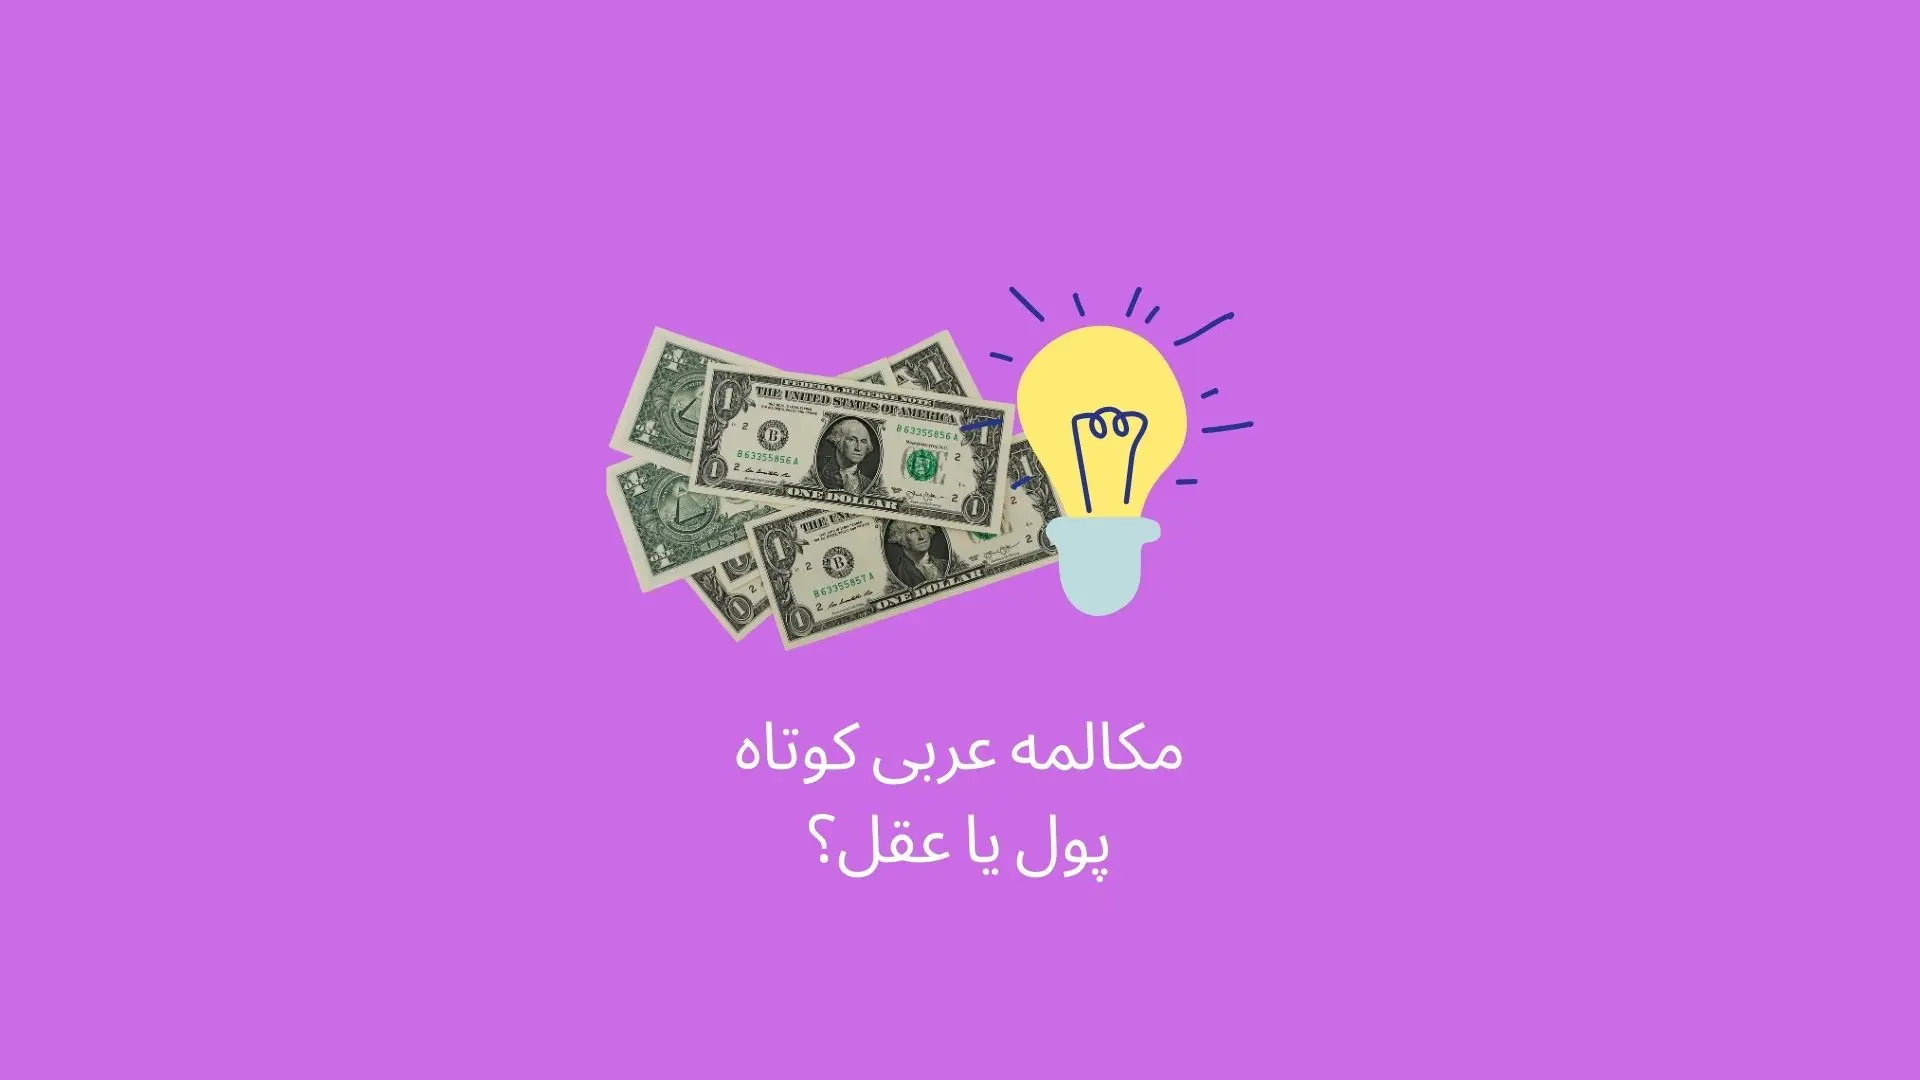 مکالمه عربی کوتاه بین دو دوست درباره عقل و پول